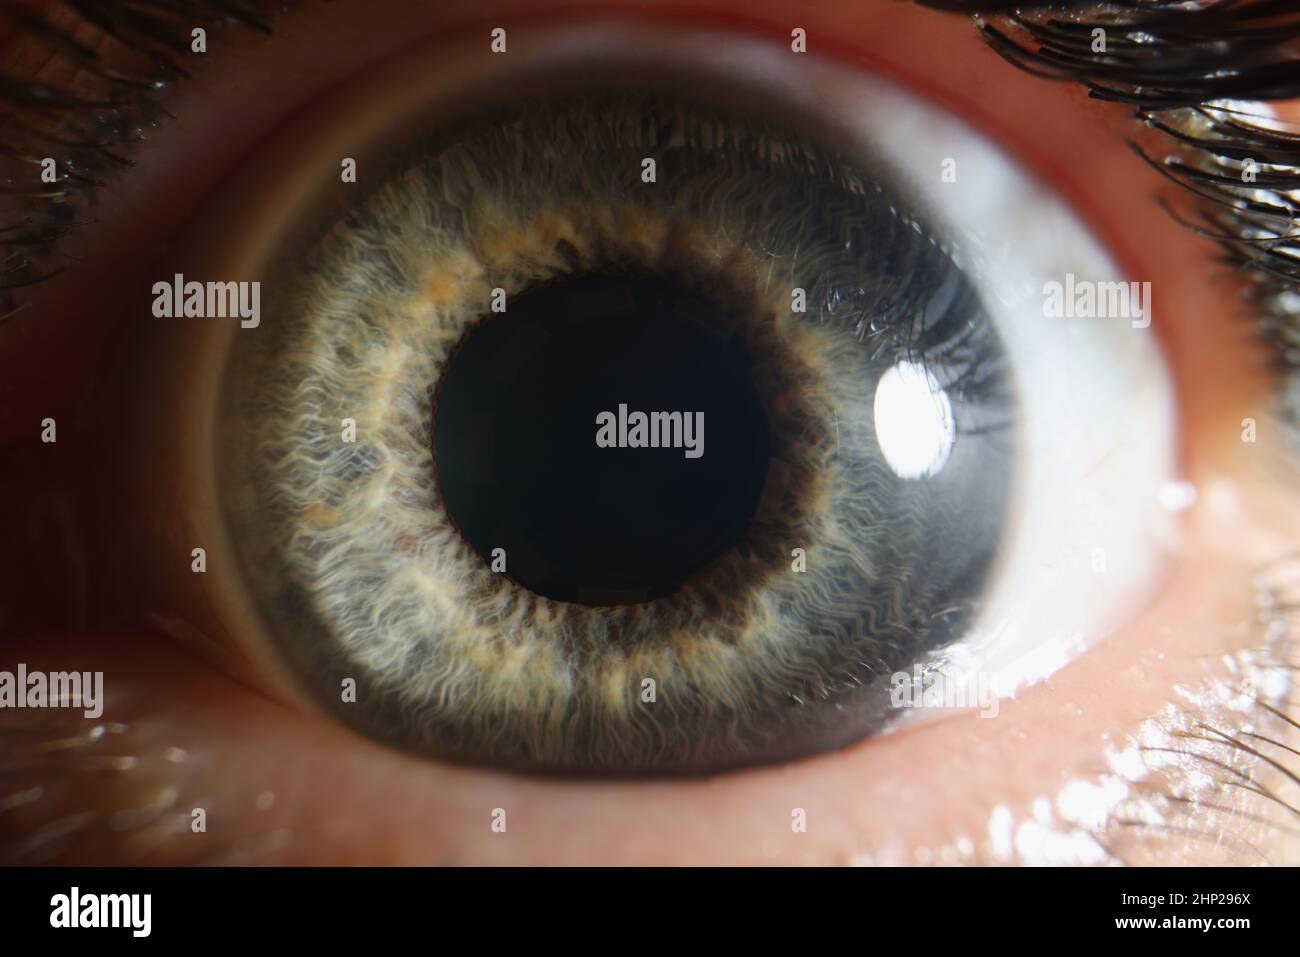 Macro oeil humain, pupille dilatée de couleur grise, rétine en gros plan Banque D'Images